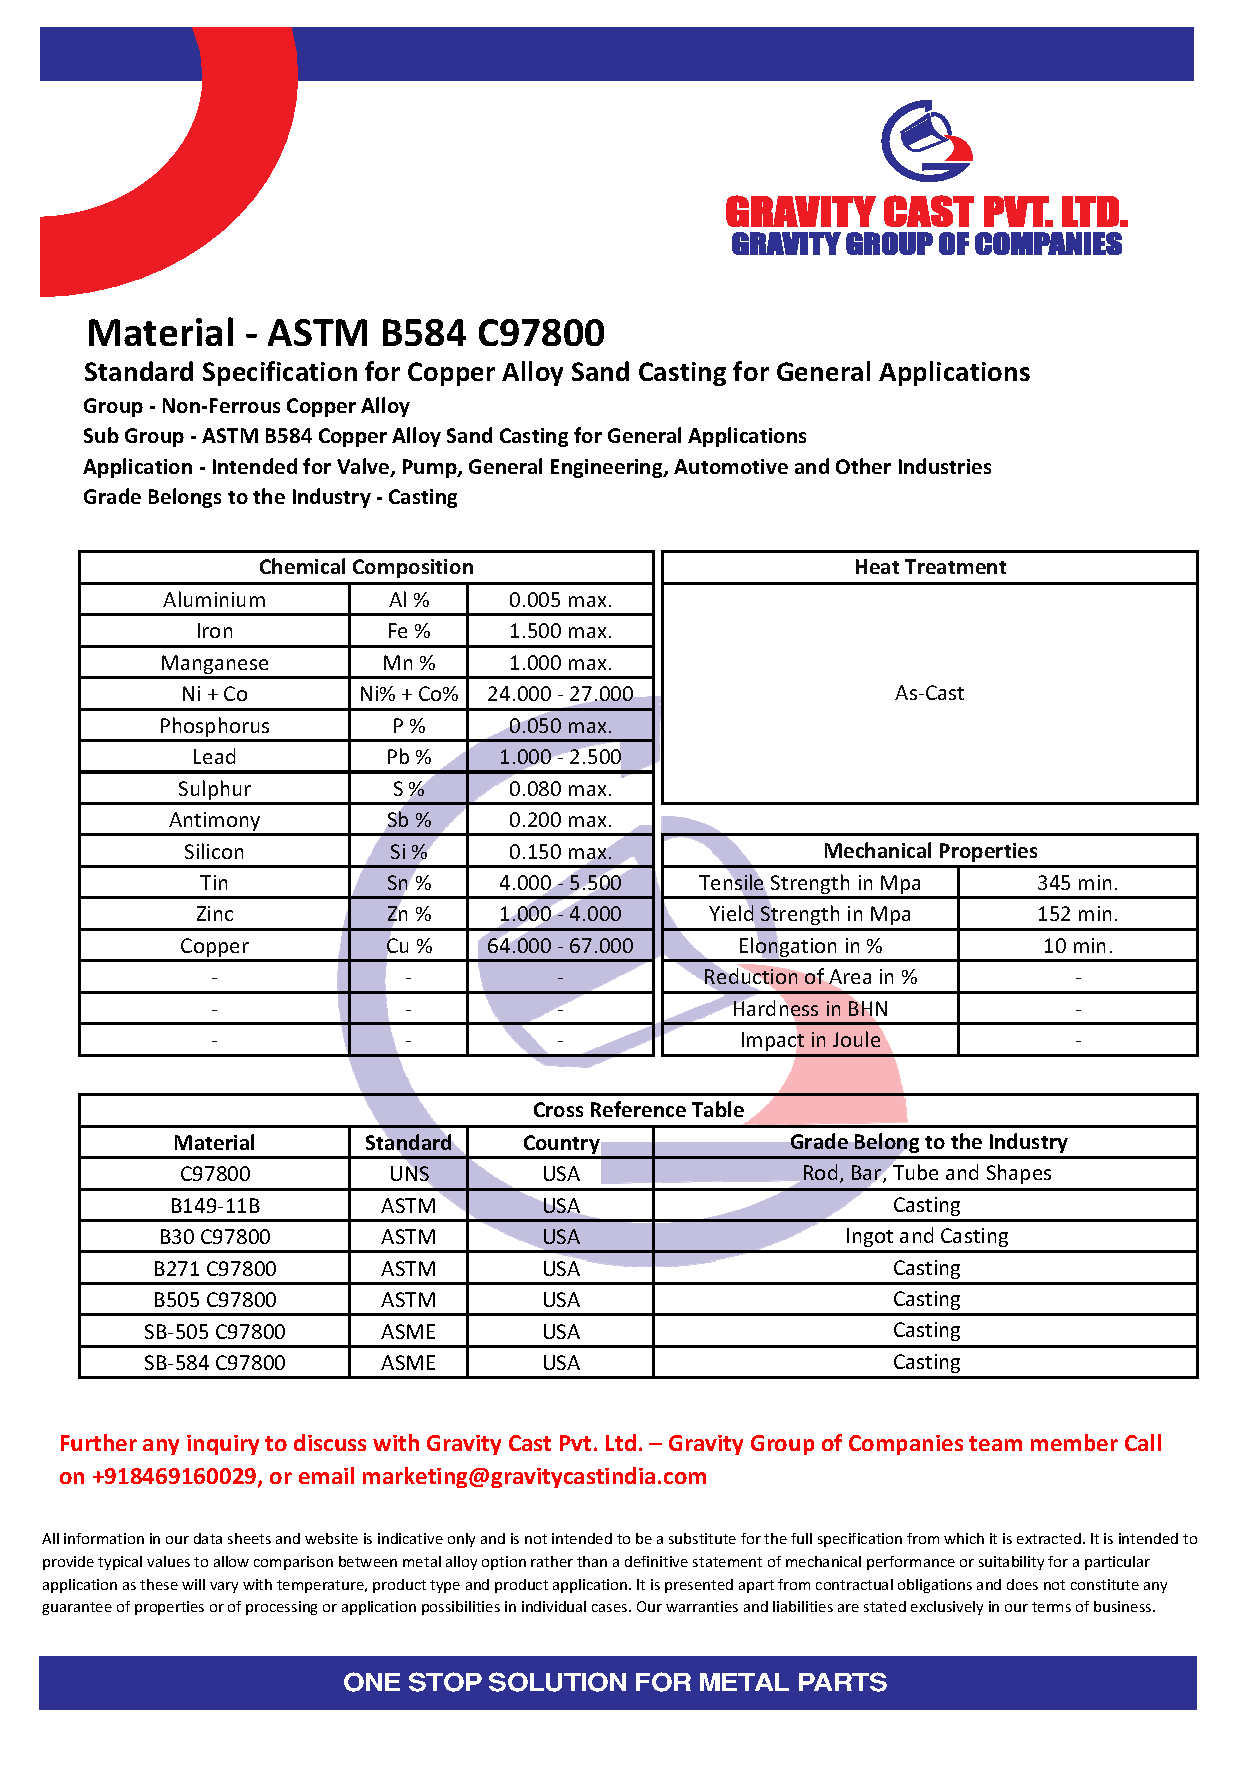 ASTM B584 C97800.pdf